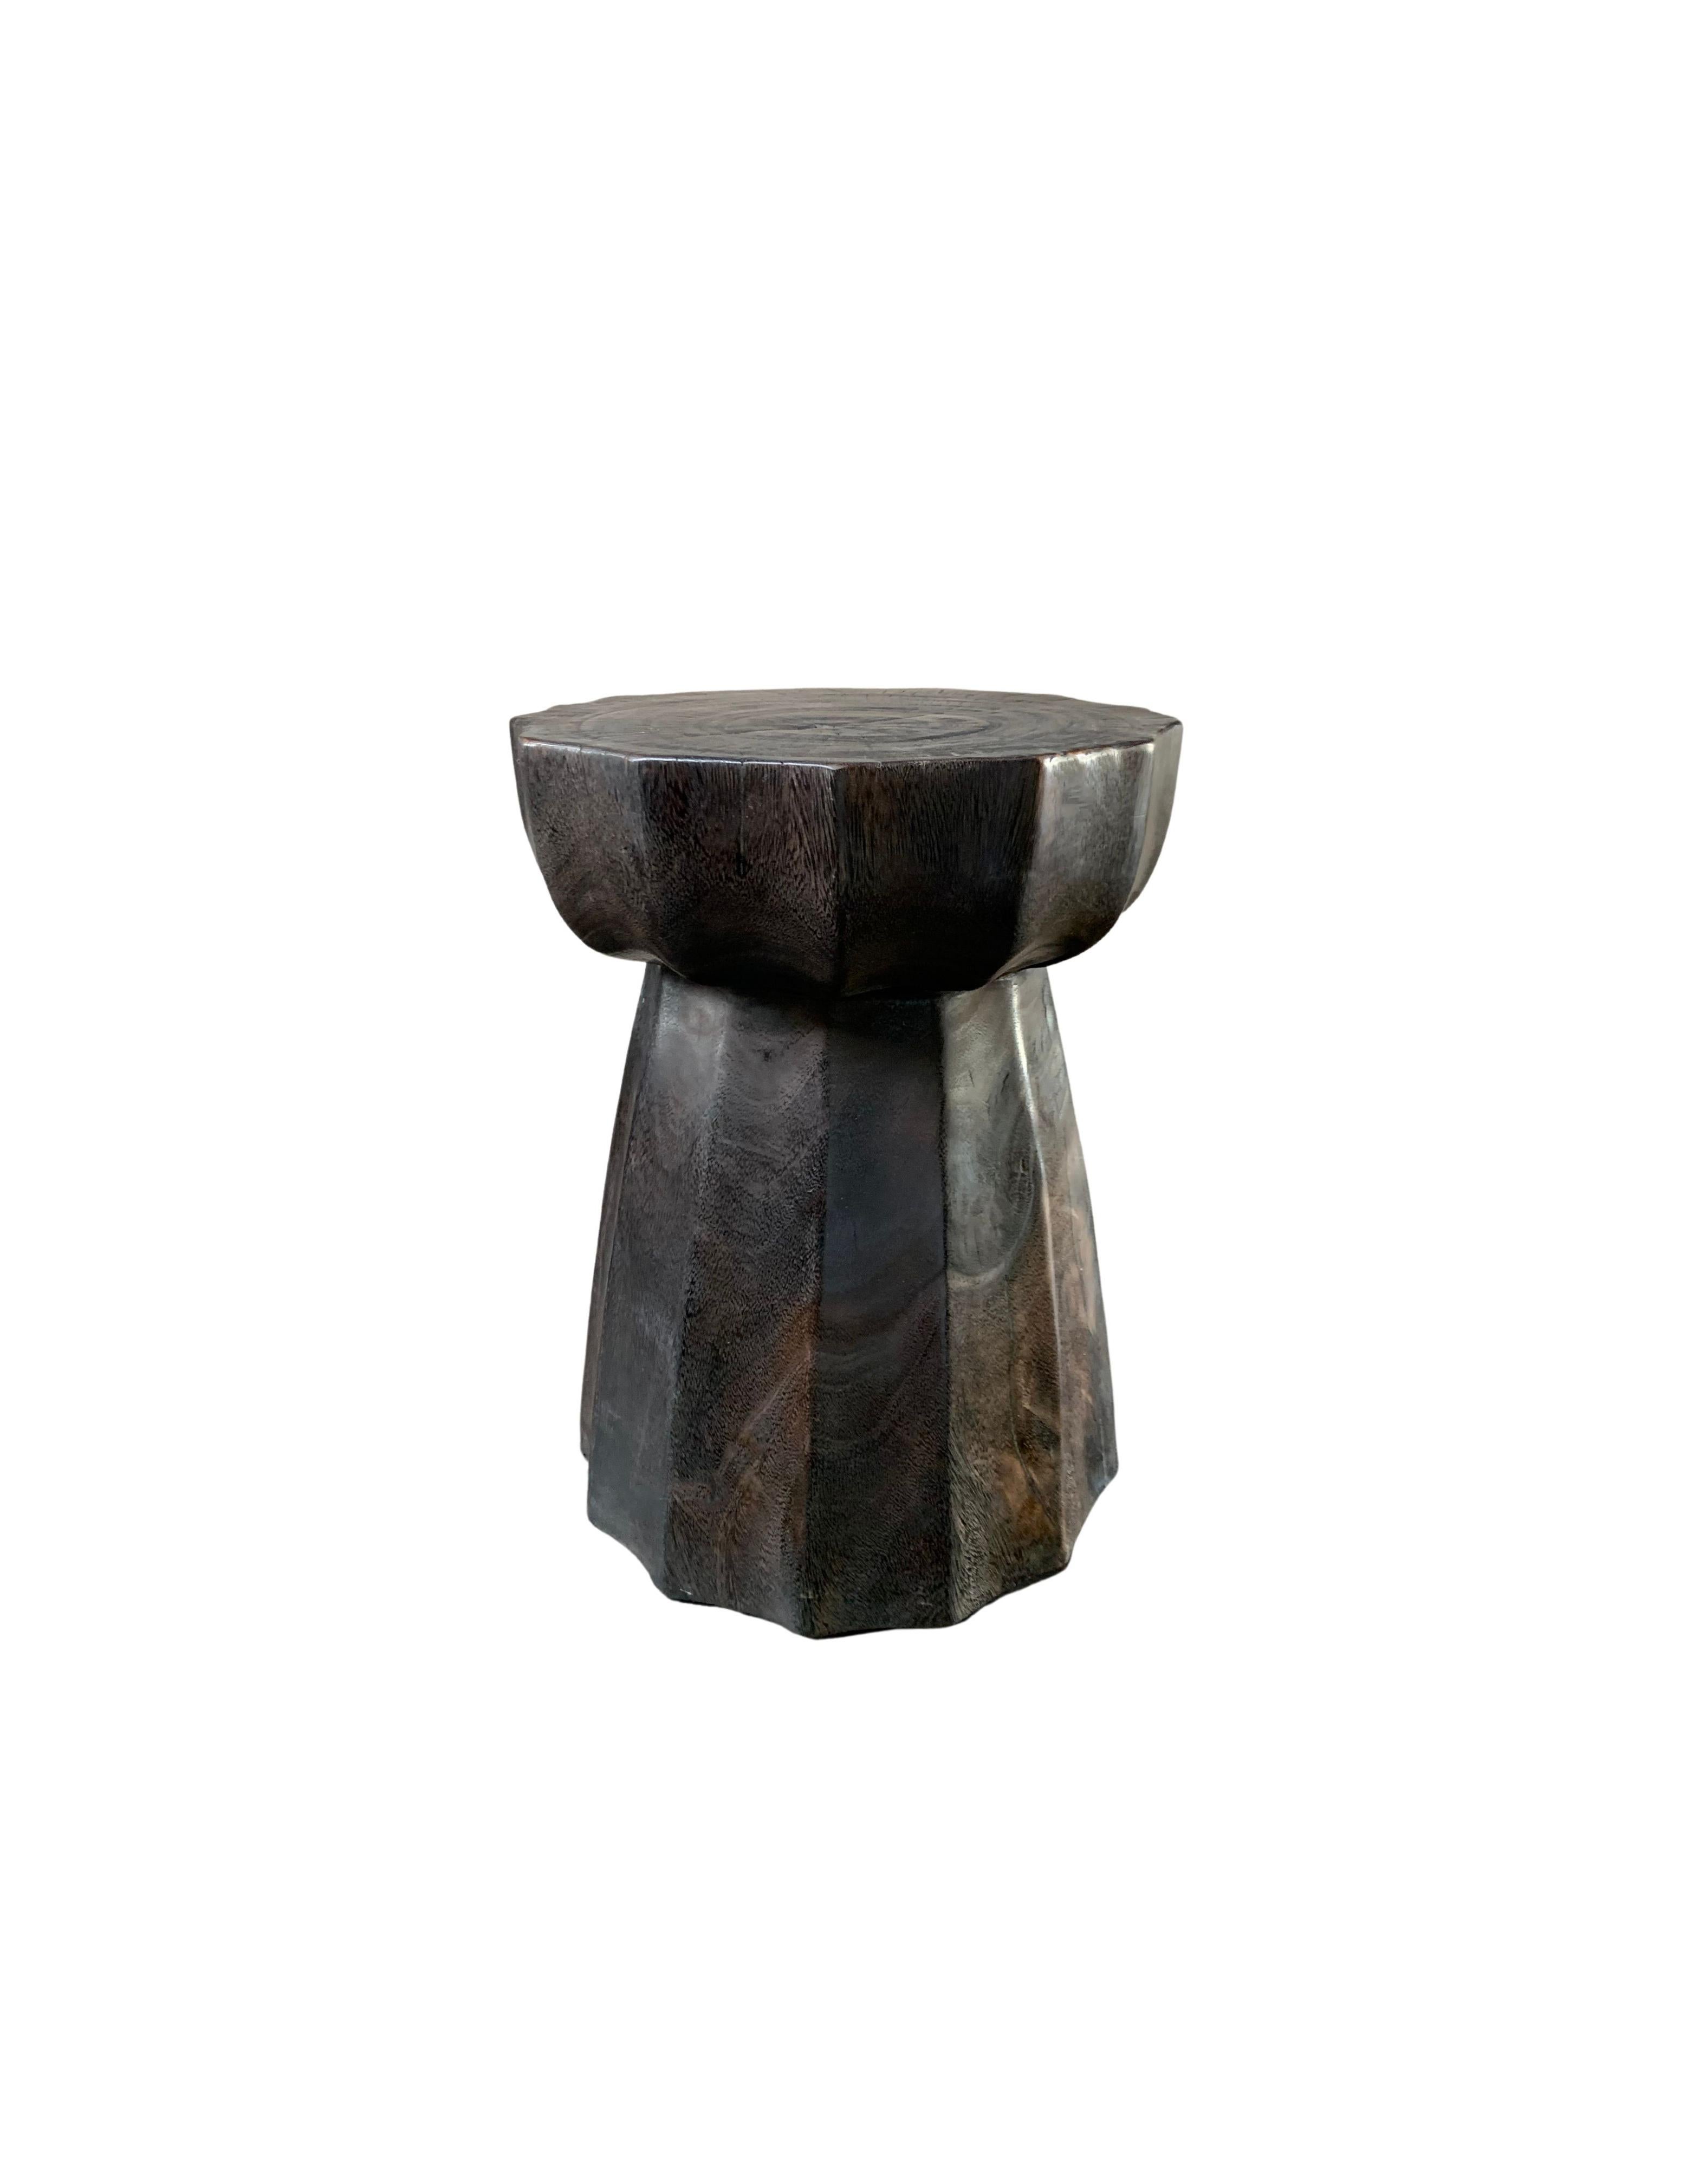 Une table d'appoint ronde merveilleusement sculpturale, avec une forme de sablier. Ses pigments neutres le rendent parfait pour tout espace. Une pièce unique, sculpturale et polyvalente, qui ne manquera pas de susciter la conversation. Il a été